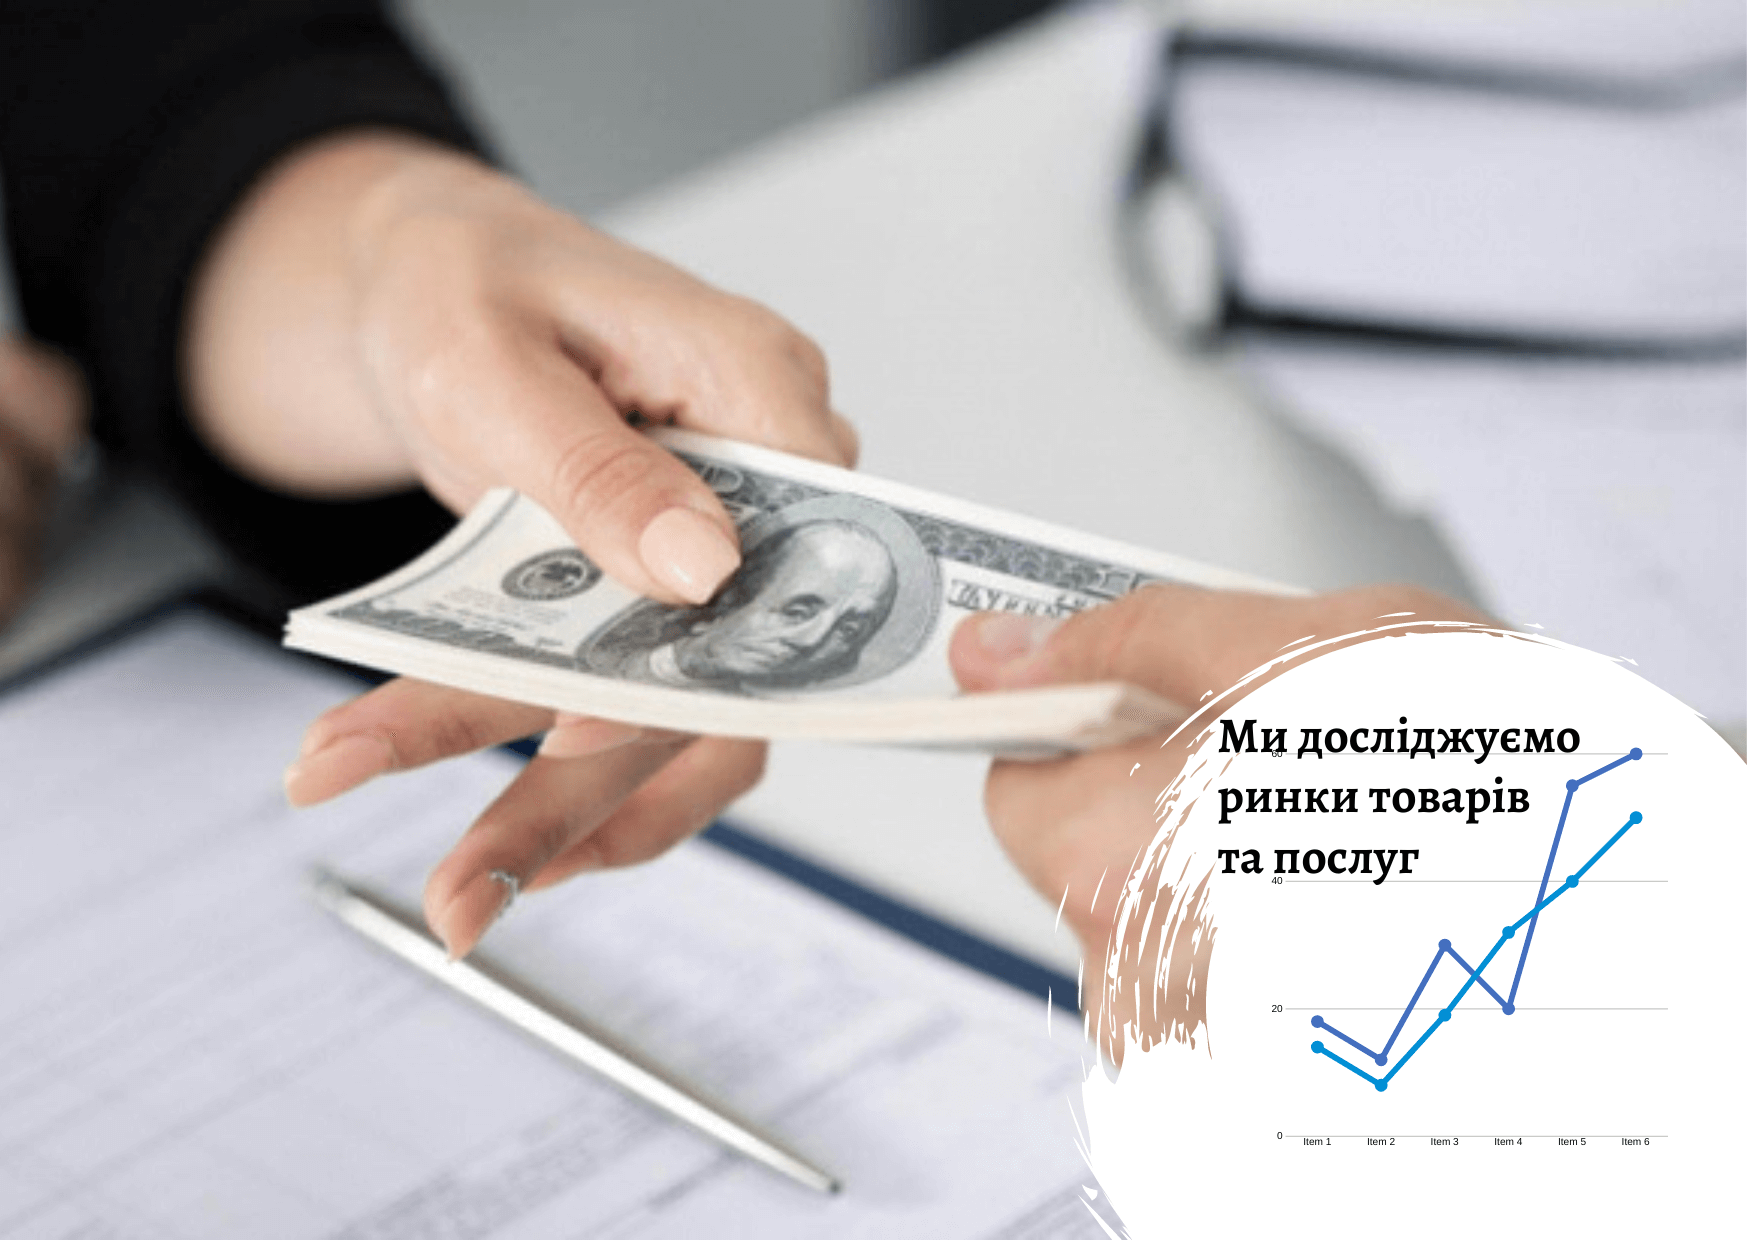 Рынок товарного кредитования и кредитования наличными в Украине: тенденции, технологии, продукты